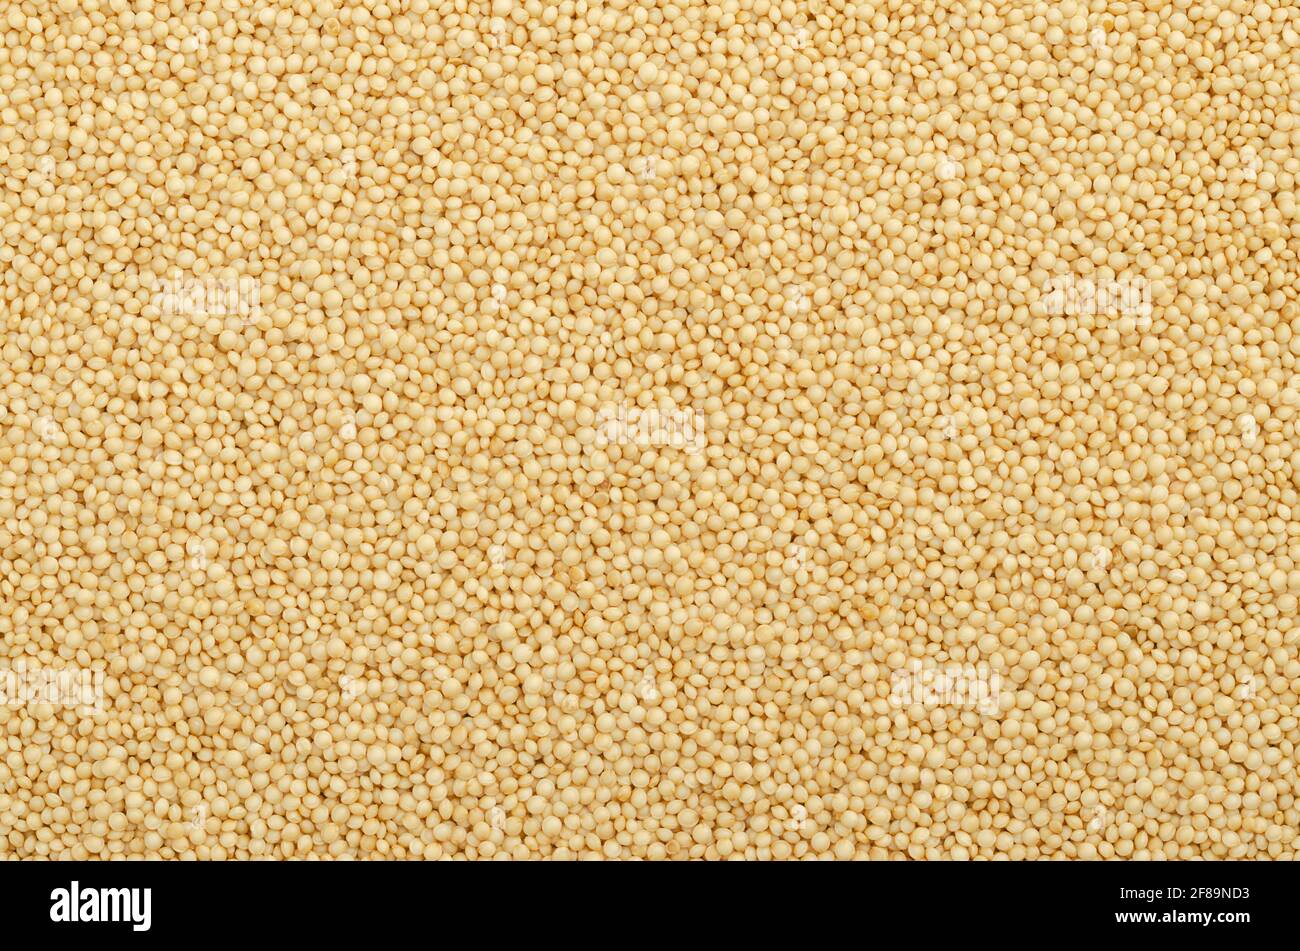 Surface et arrière-plan du grain d'Amaranth. De petites graines d'Amaranthus, un pseudocereal sans gluten semblable au quinoa, un aliment de base et une source de protéines. Banque D'Images